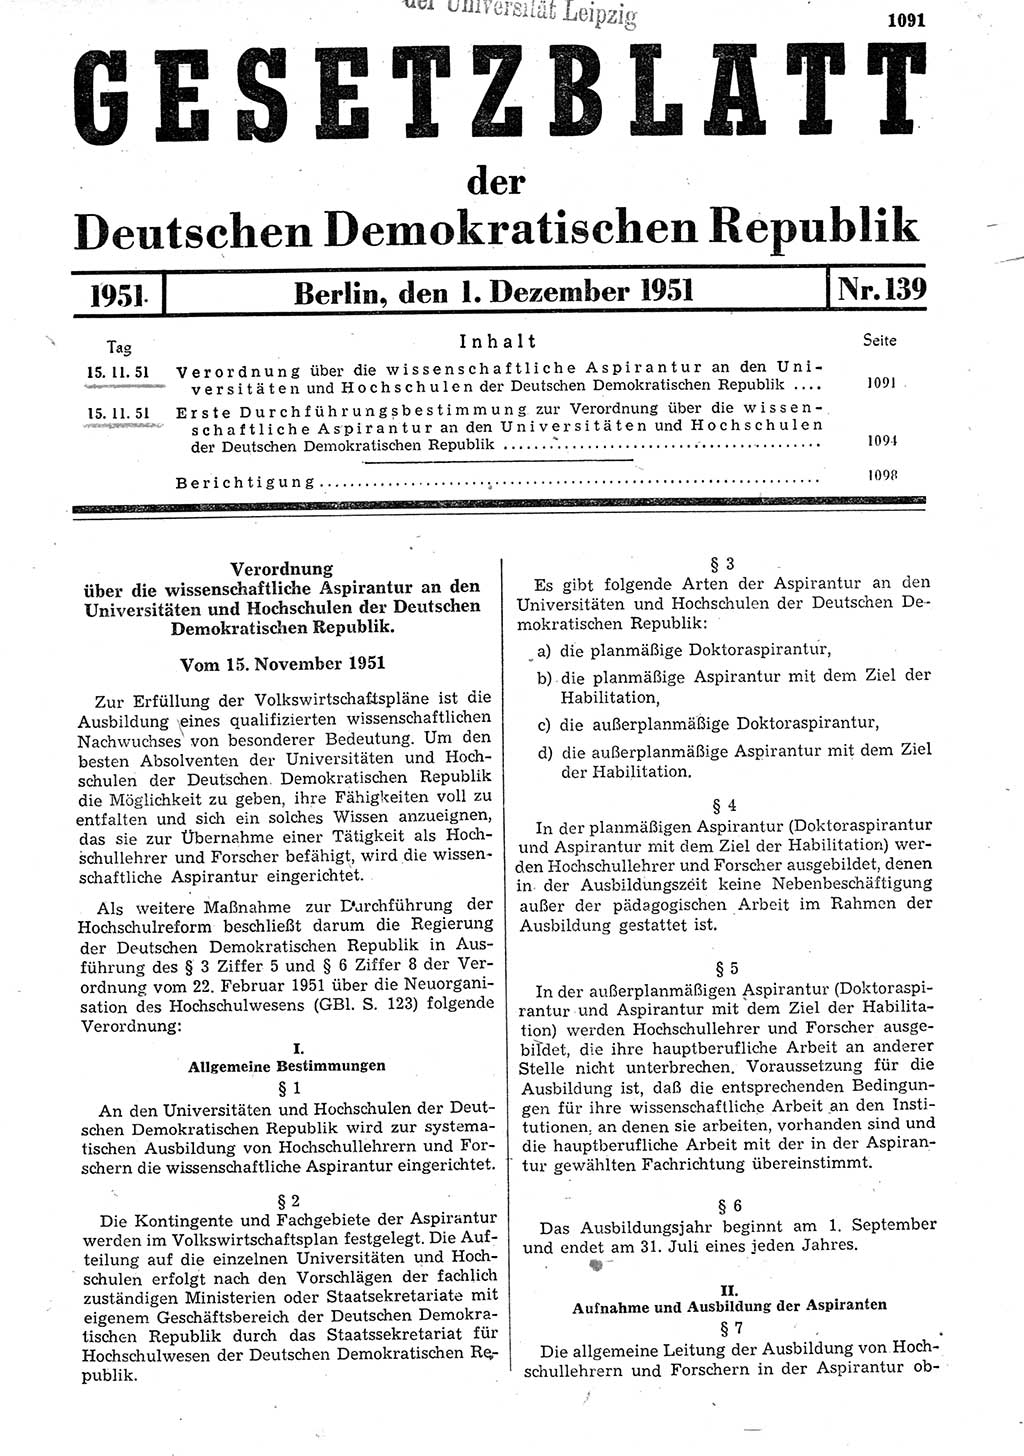 Gesetzblatt (GBl.) der Deutschen Demokratischen Republik (DDR) 1951, Seite 1091 (GBl. DDR 1951, S. 1091)